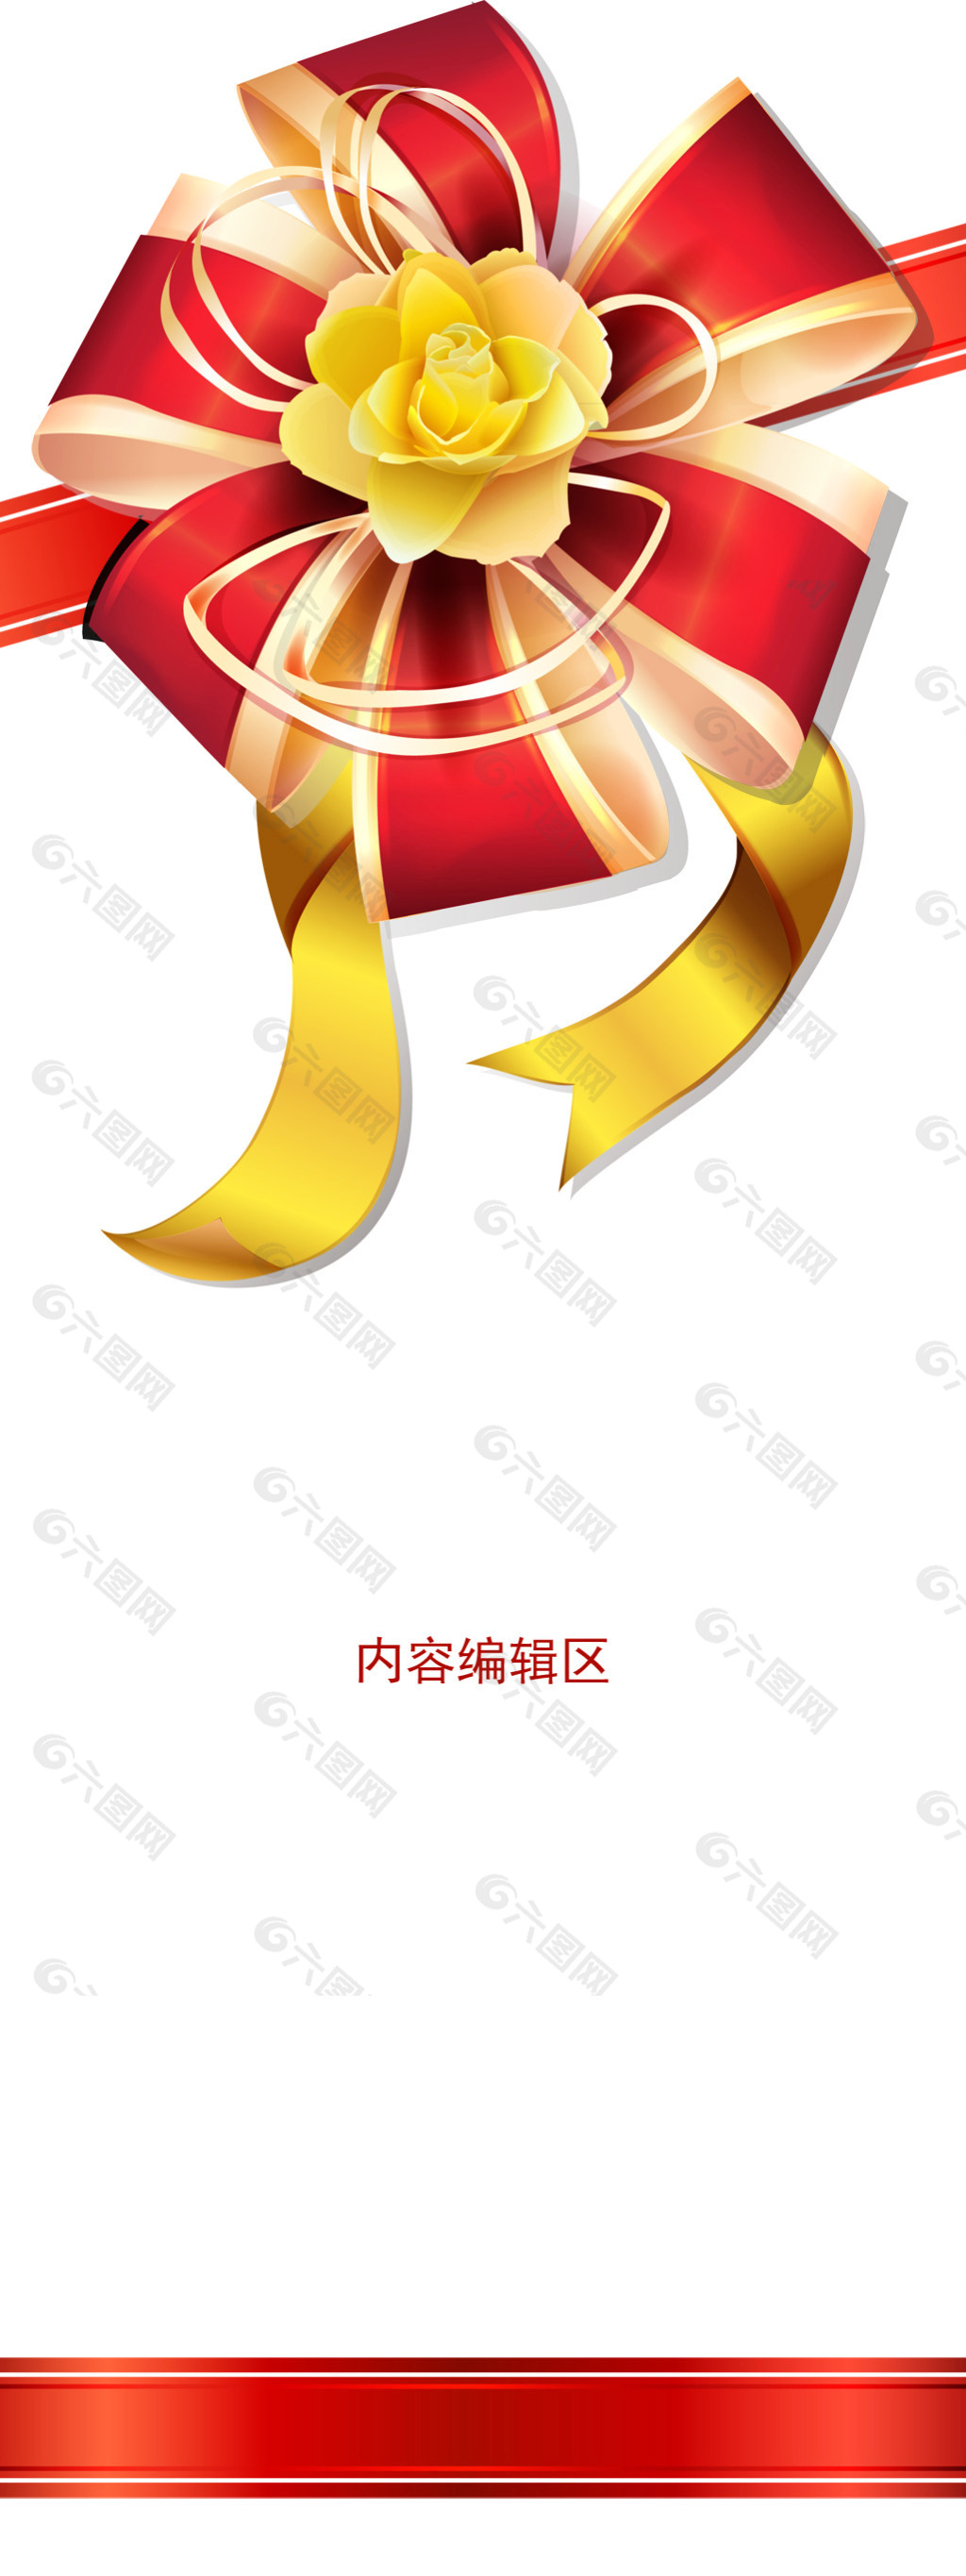 红色精美中国结展架设计素材画面海报